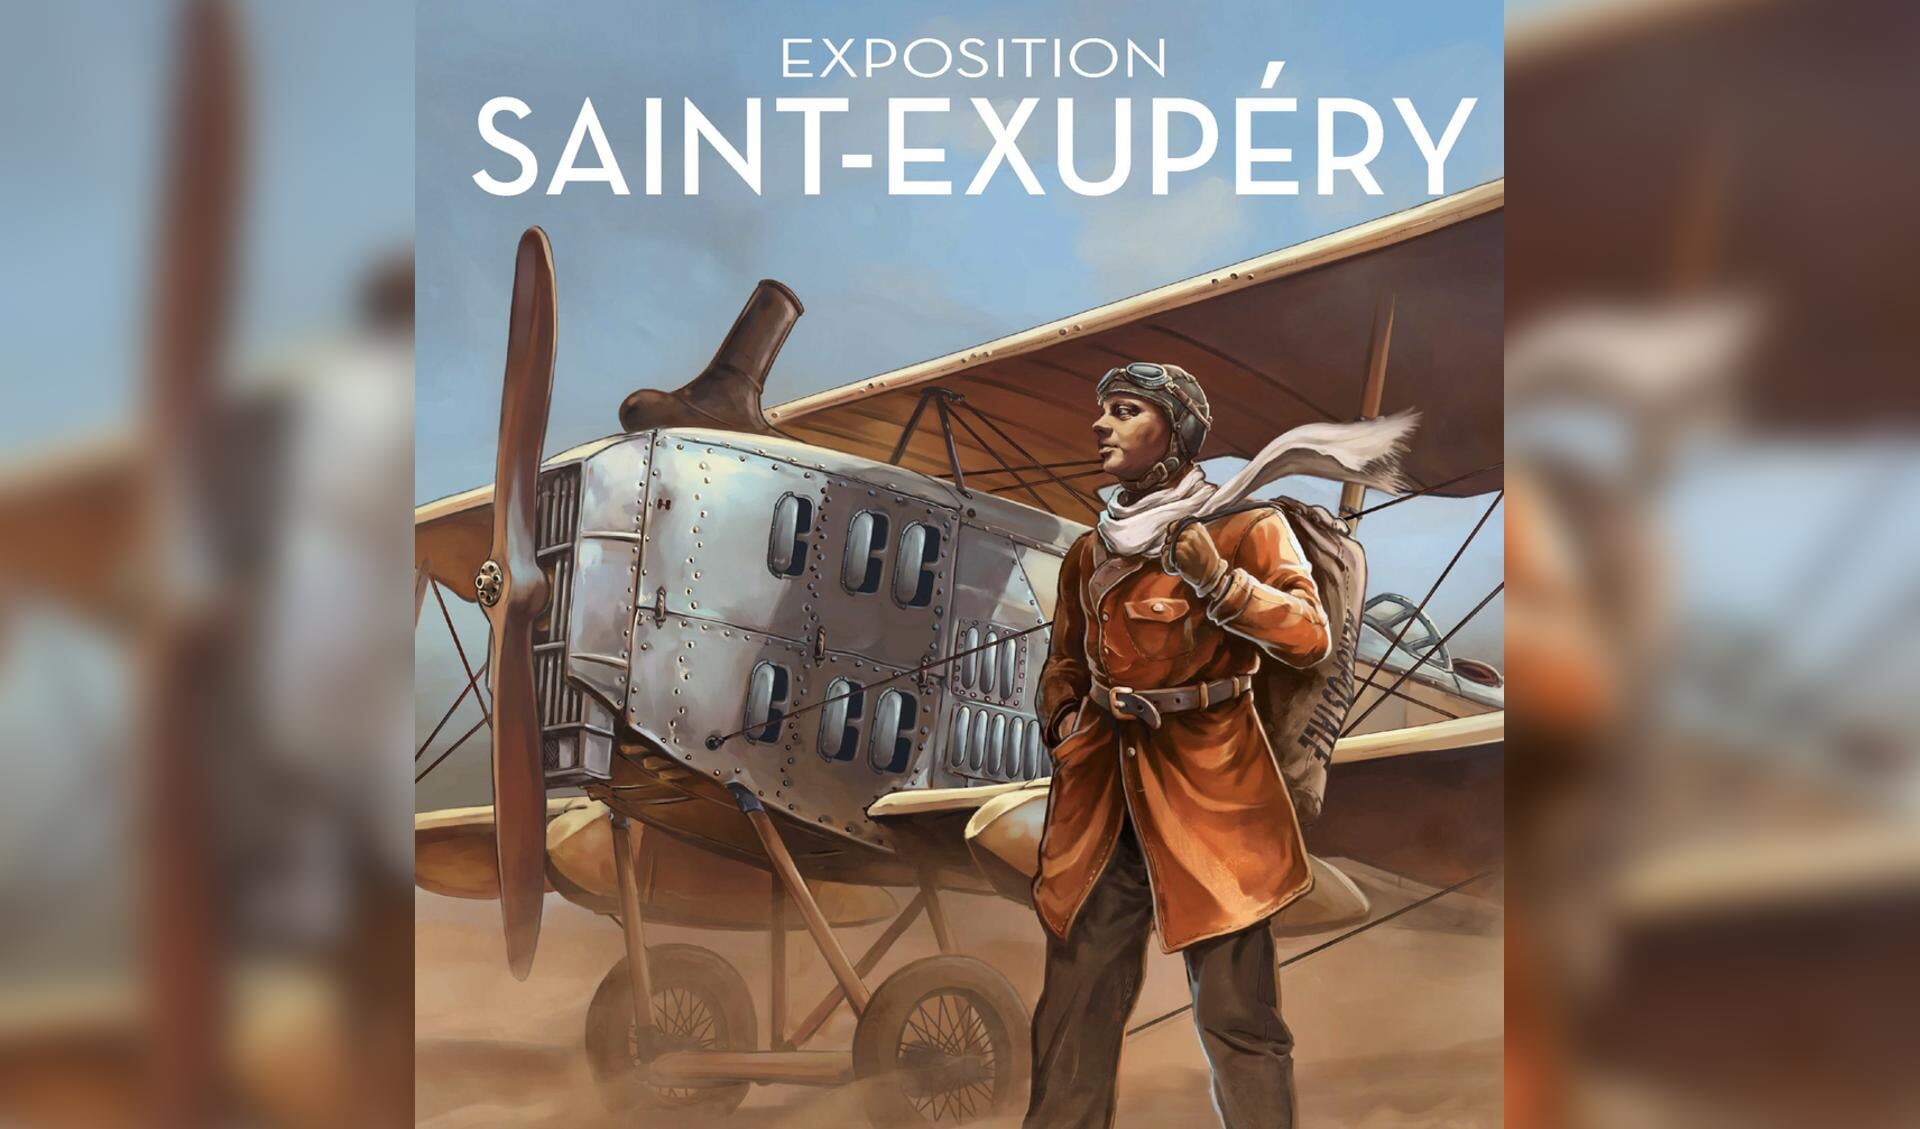 De onverschrokken Antoine de Saint-Exupéry, piloot en schrijver